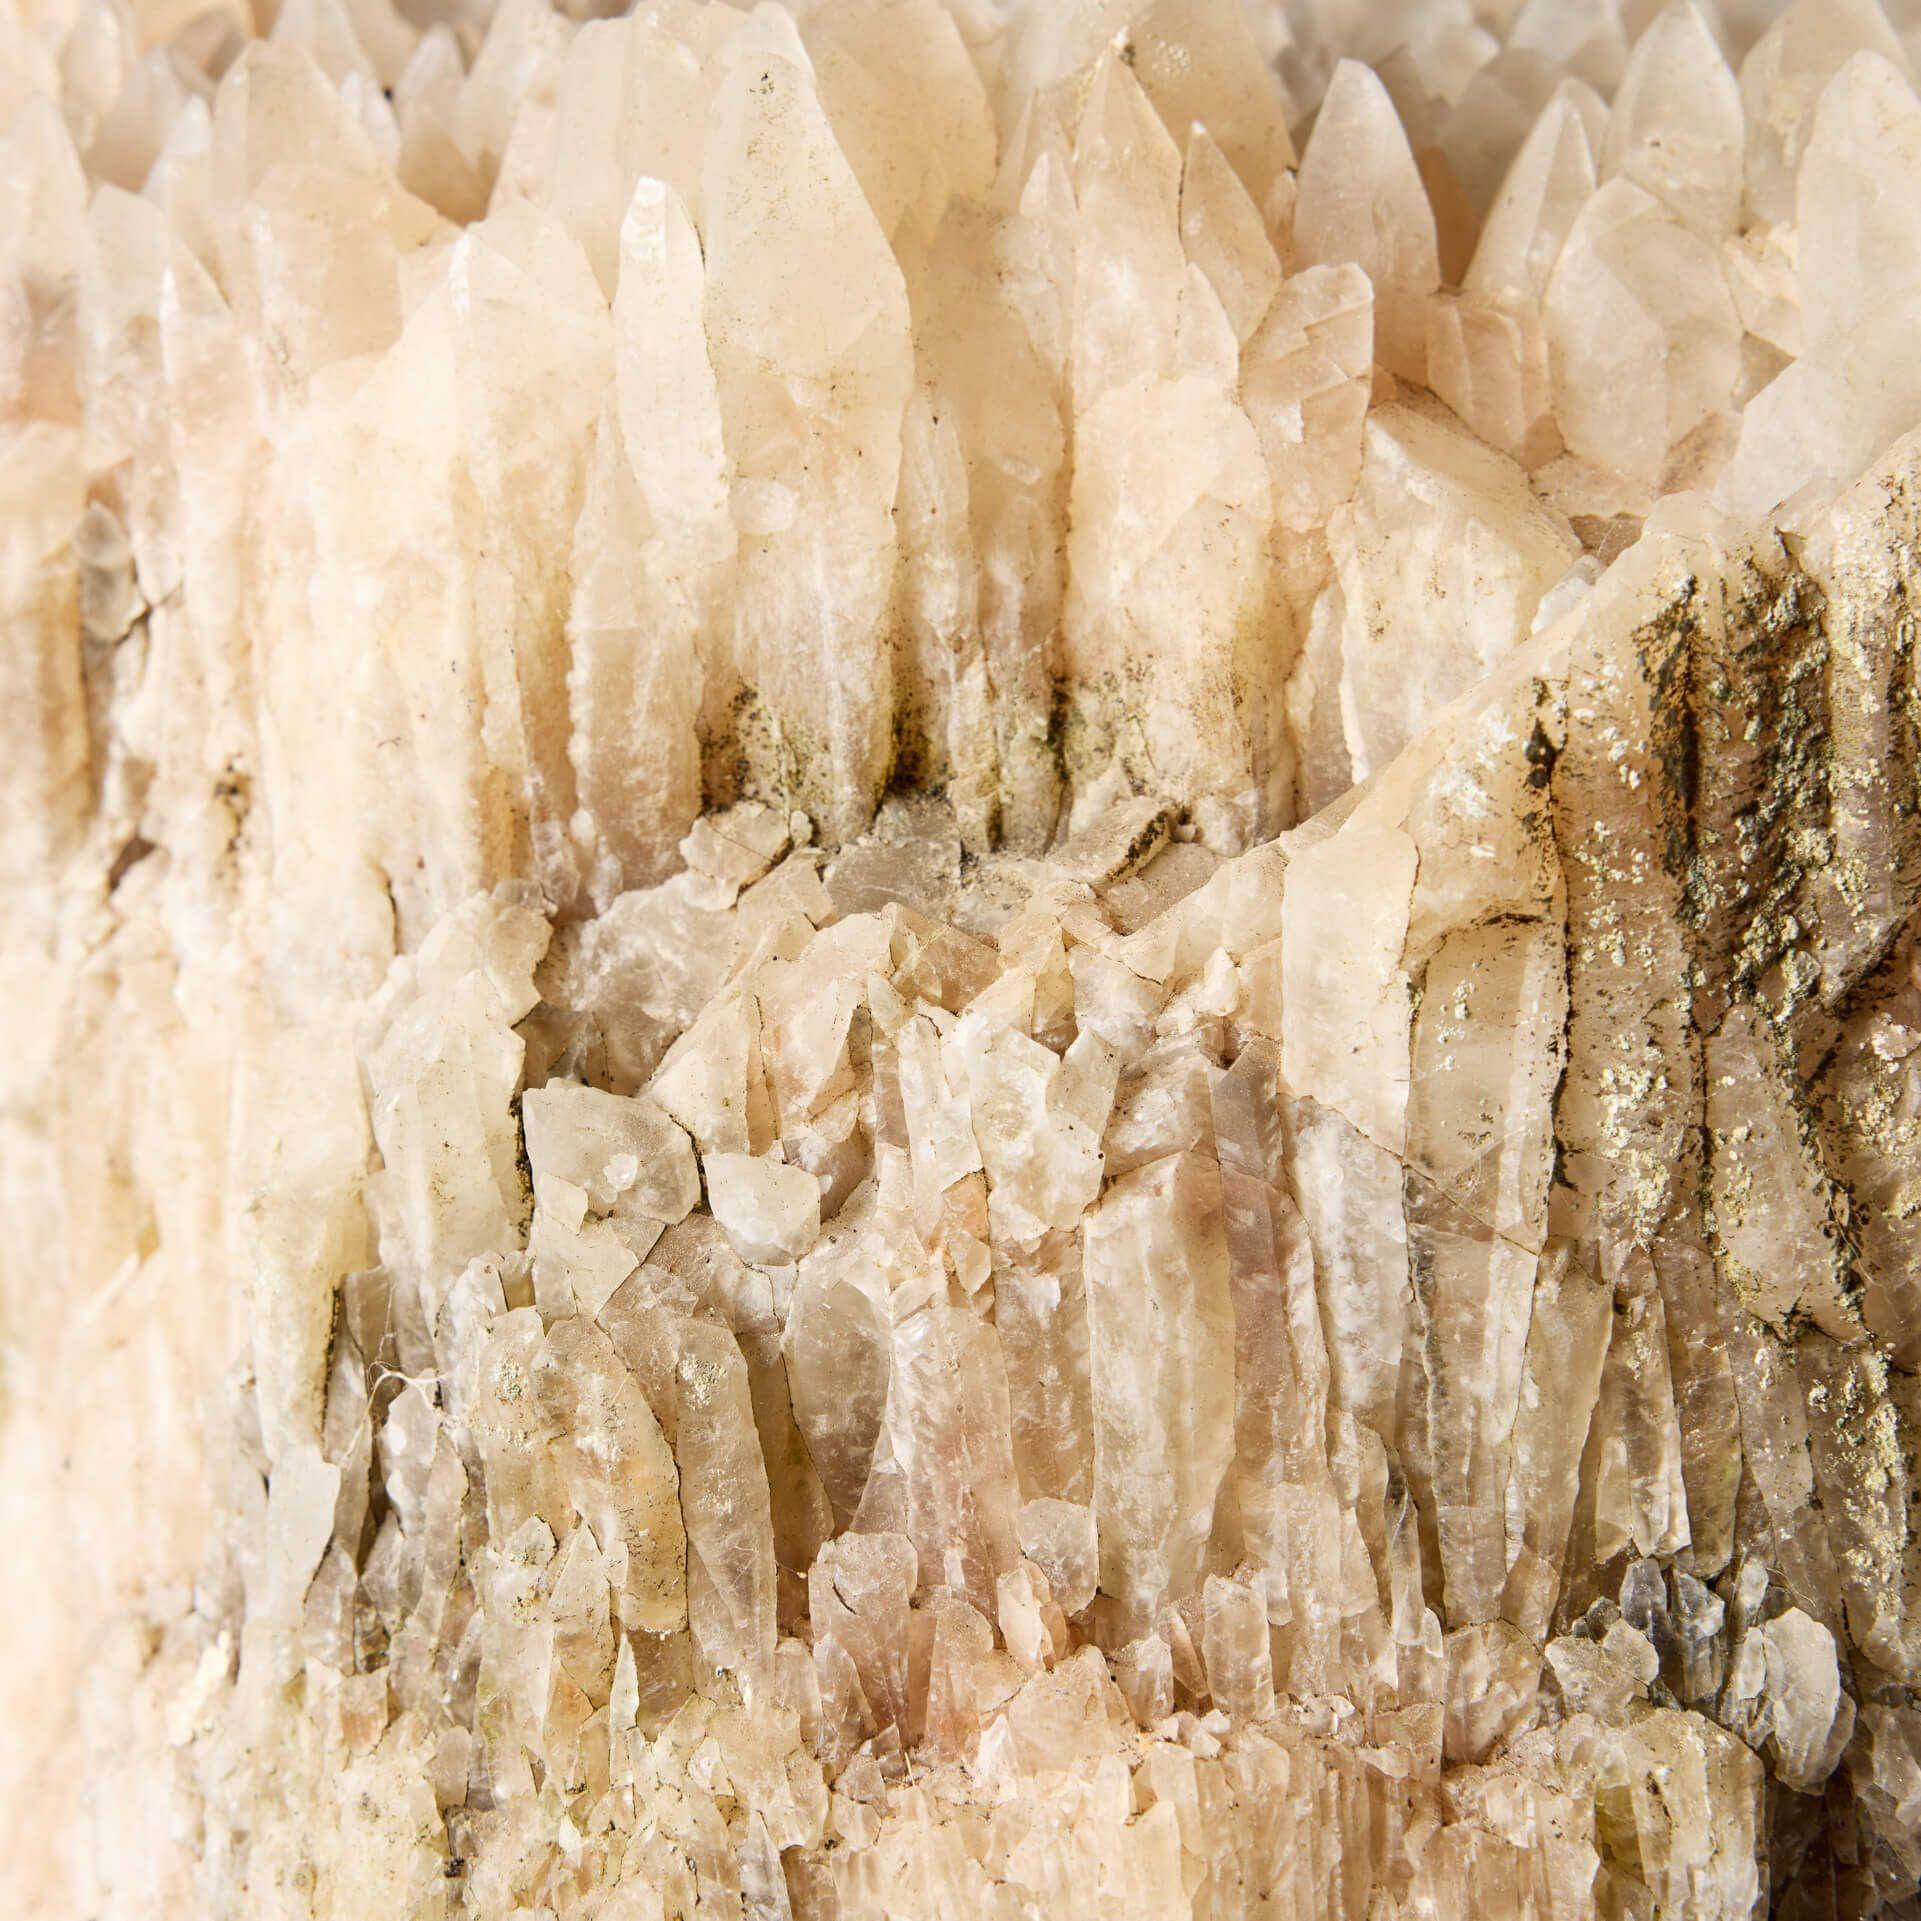 Rock Crystal Large Natural British Dogtooth Calcite Specimen For Sale